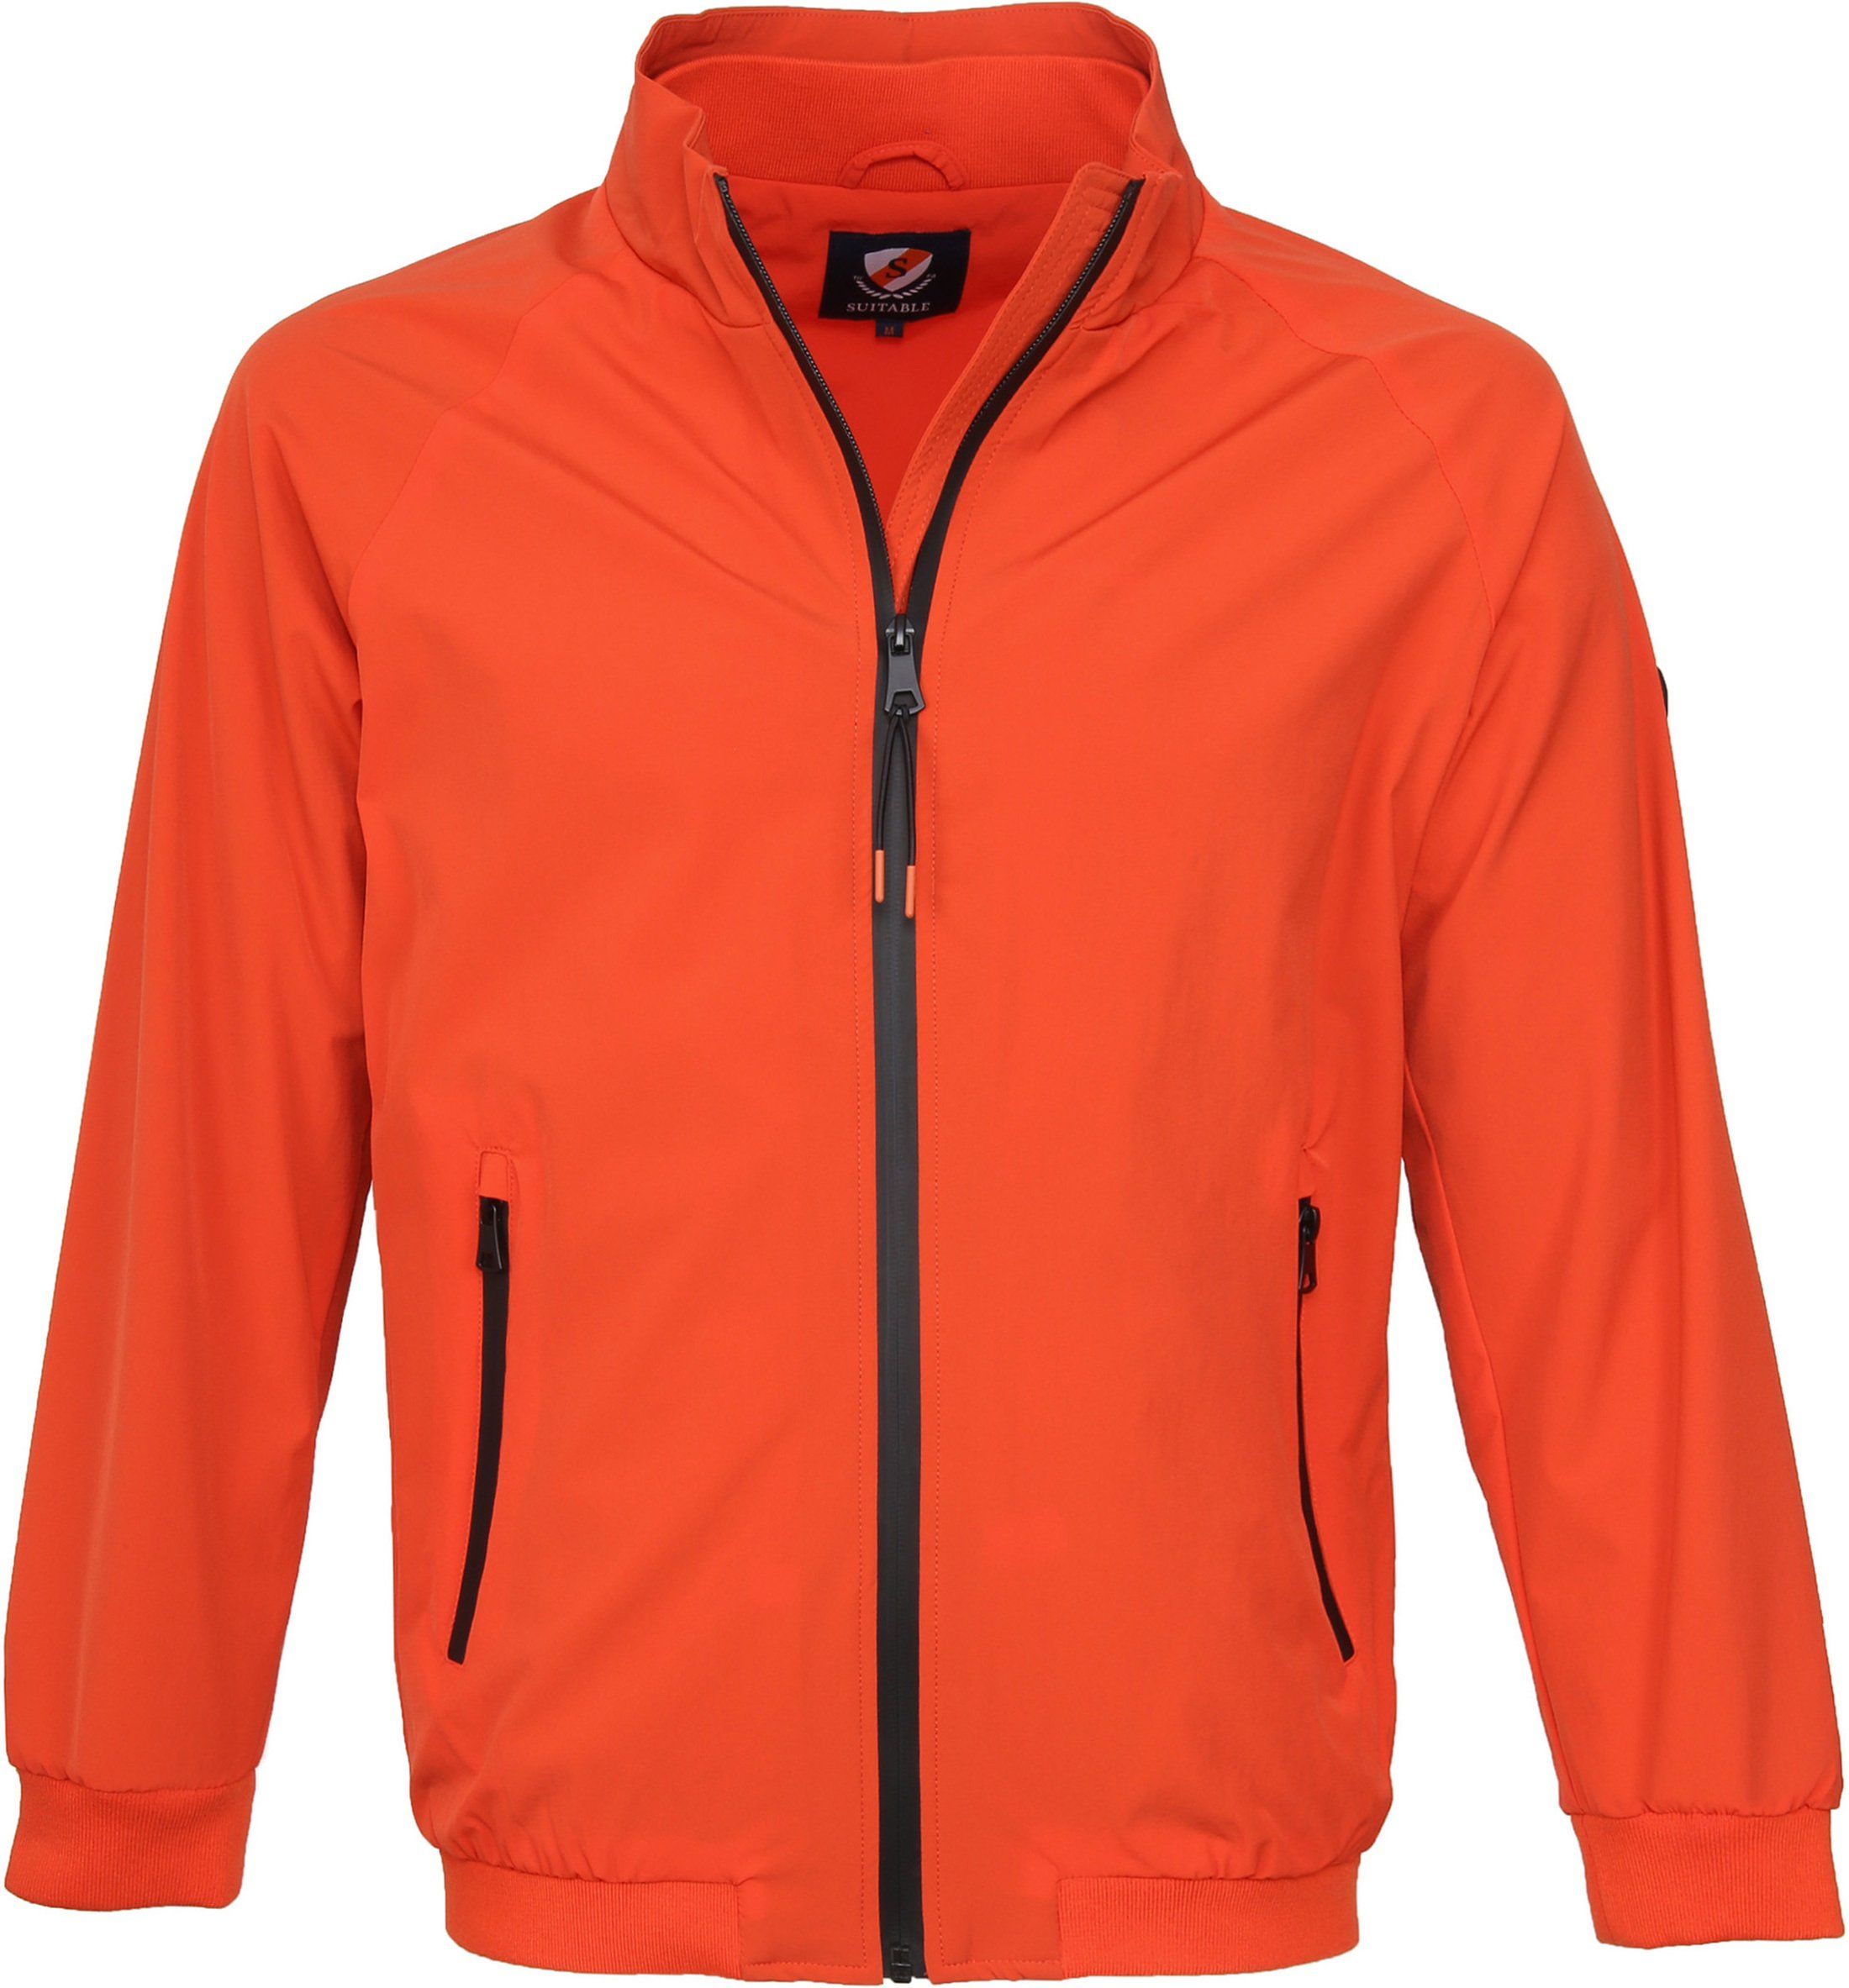 Suitable Jacket Rich Orange size L